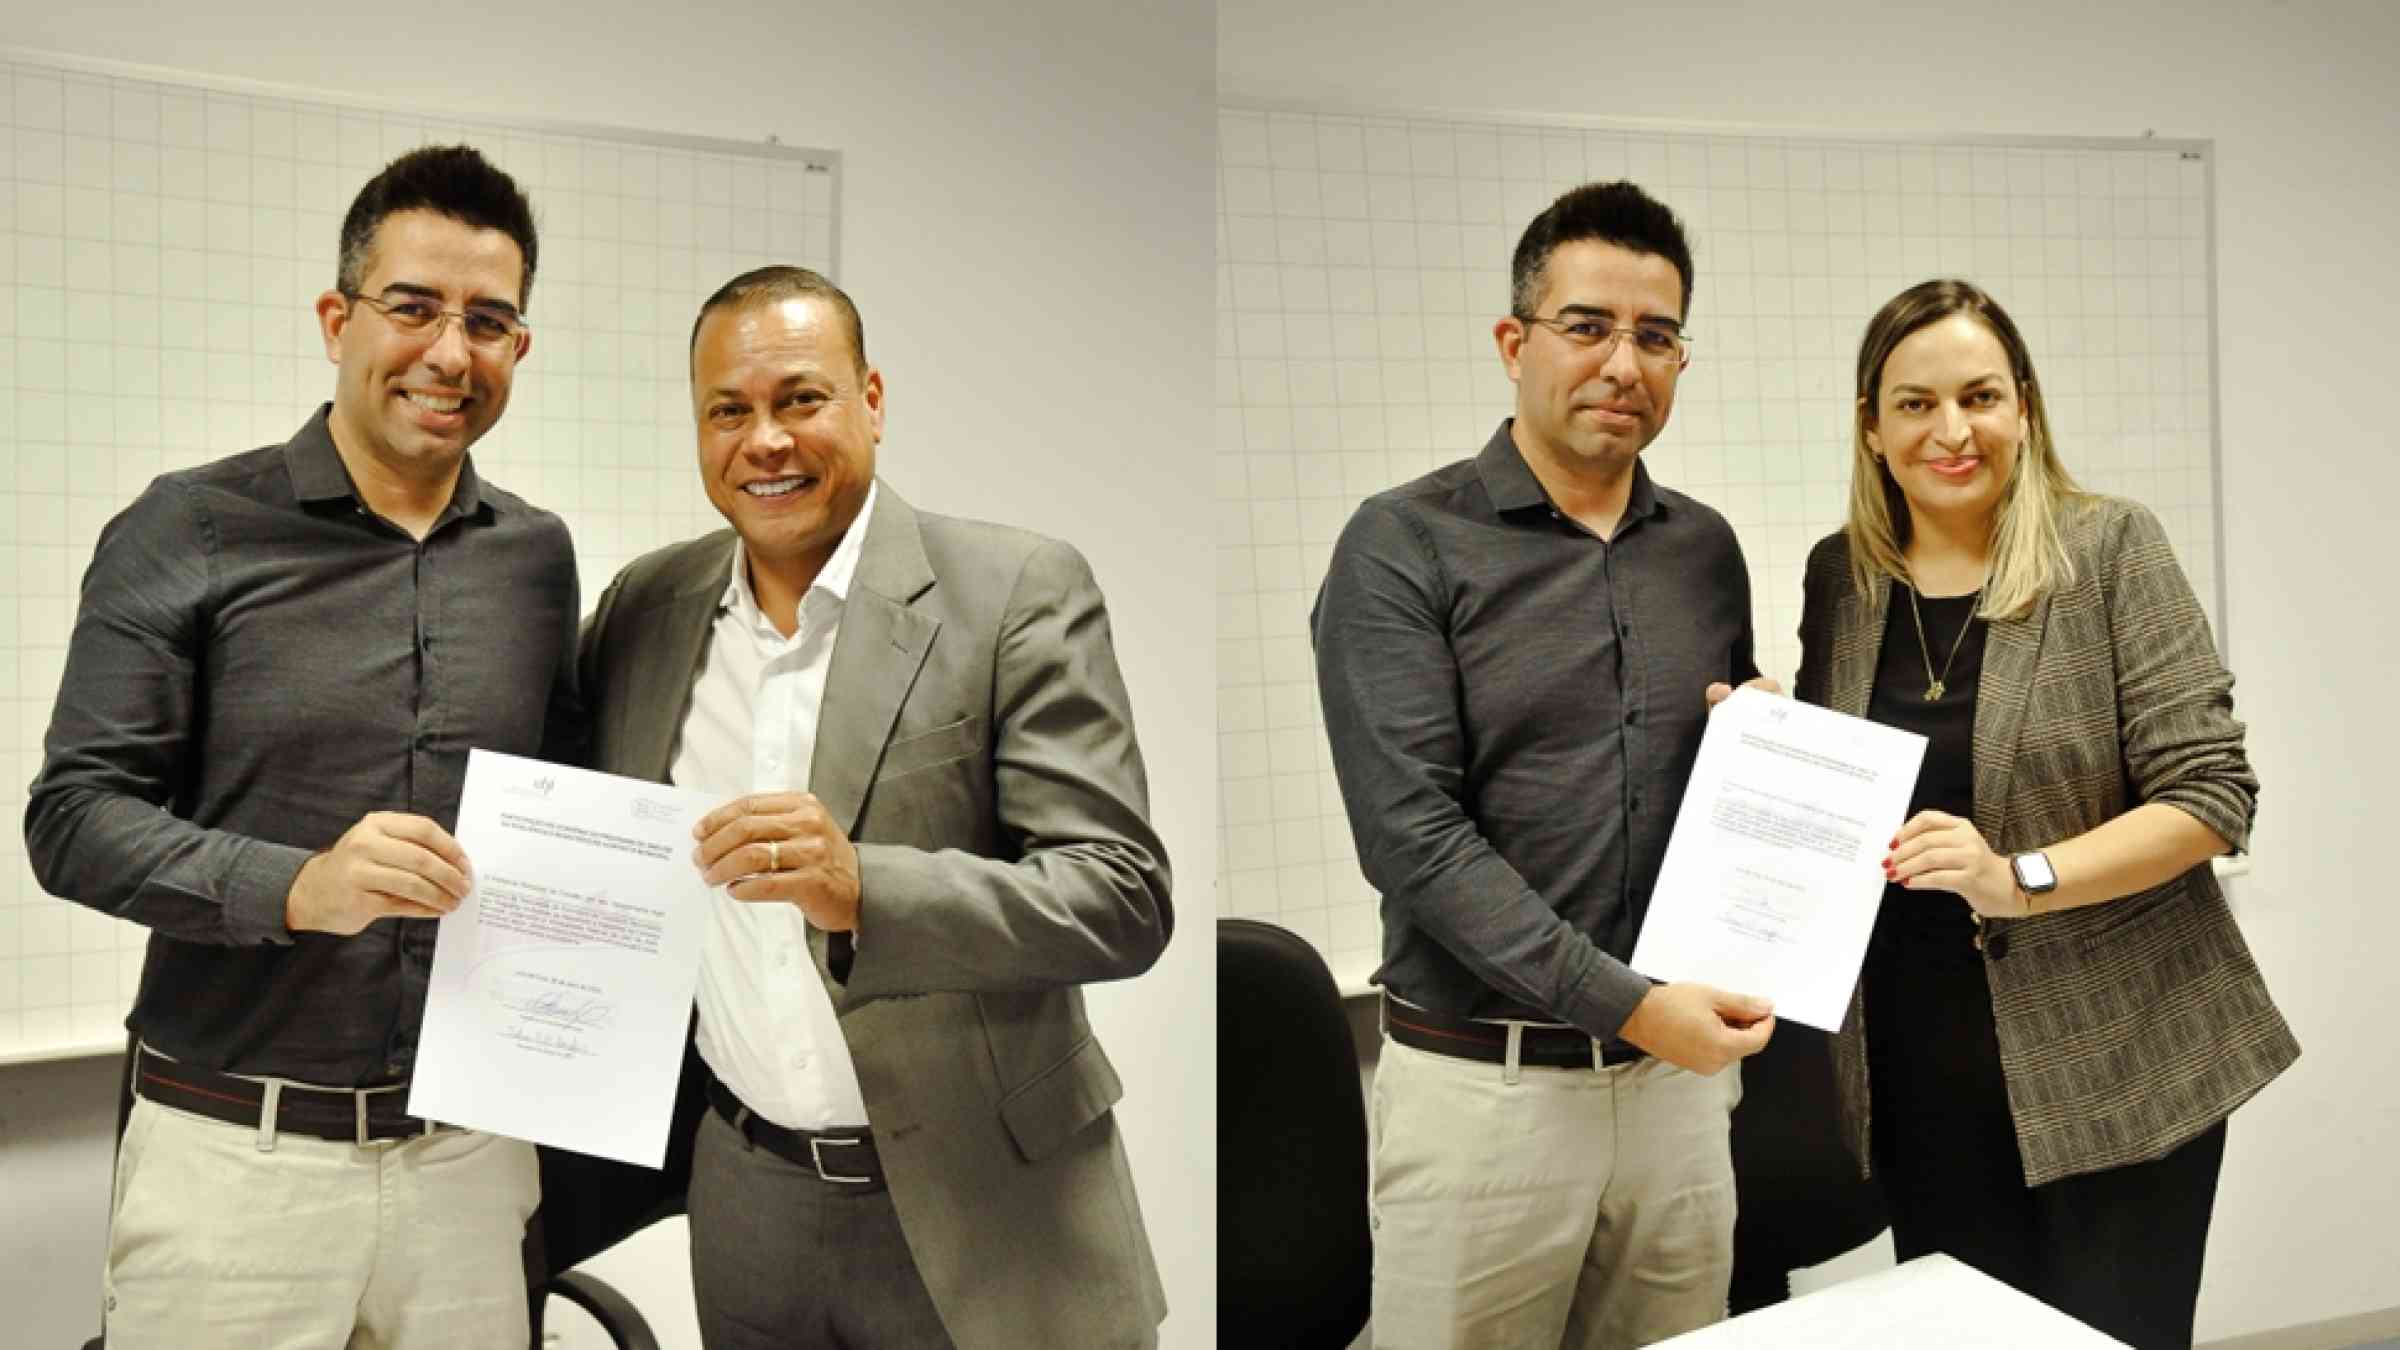 Fabrício Campos (UFJF) next to César da Silva Nascimento (Cubatão, SP) and Lorena Rodrigues de Oliveira (Franco da Rocha, SP) with signed cooperation agreements.